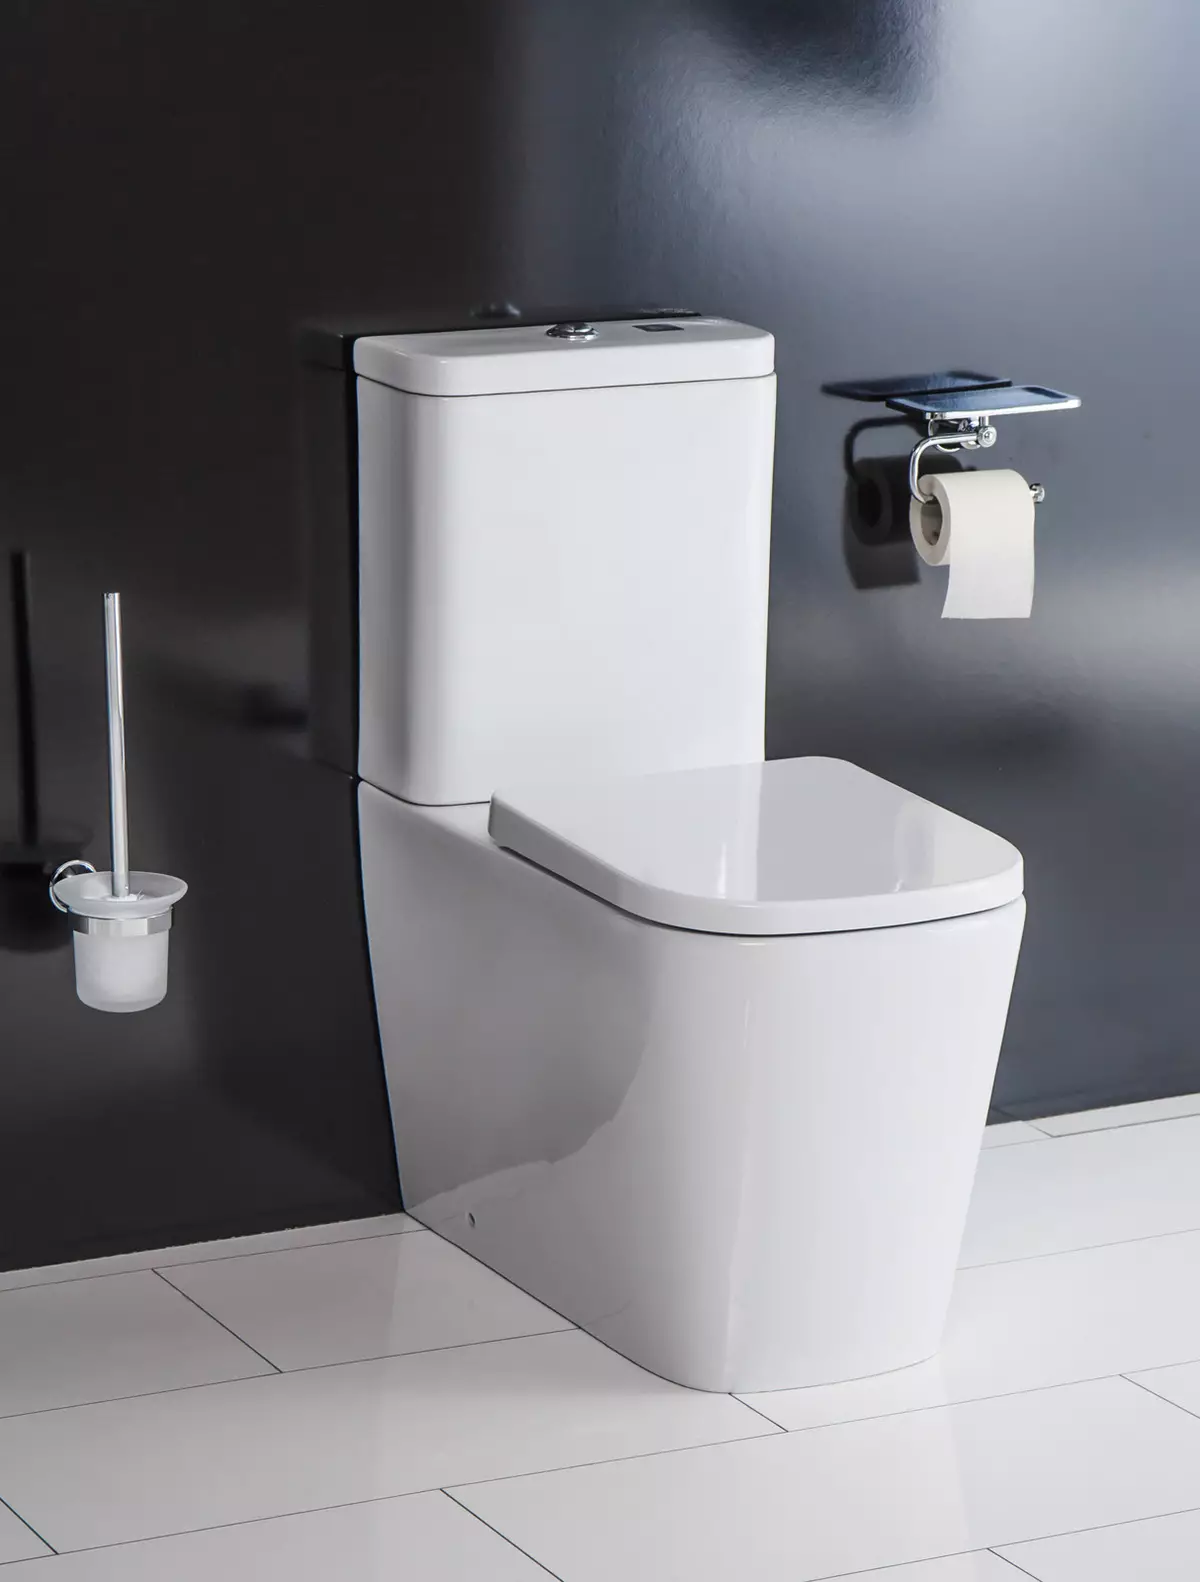 Brezbridni talni WC: Kateri modeli brez platišča je boljši? Izbira toaletne sklede z rezervoarjem in brez nje, iz porcelana ali faenda. Ocena 10533_12